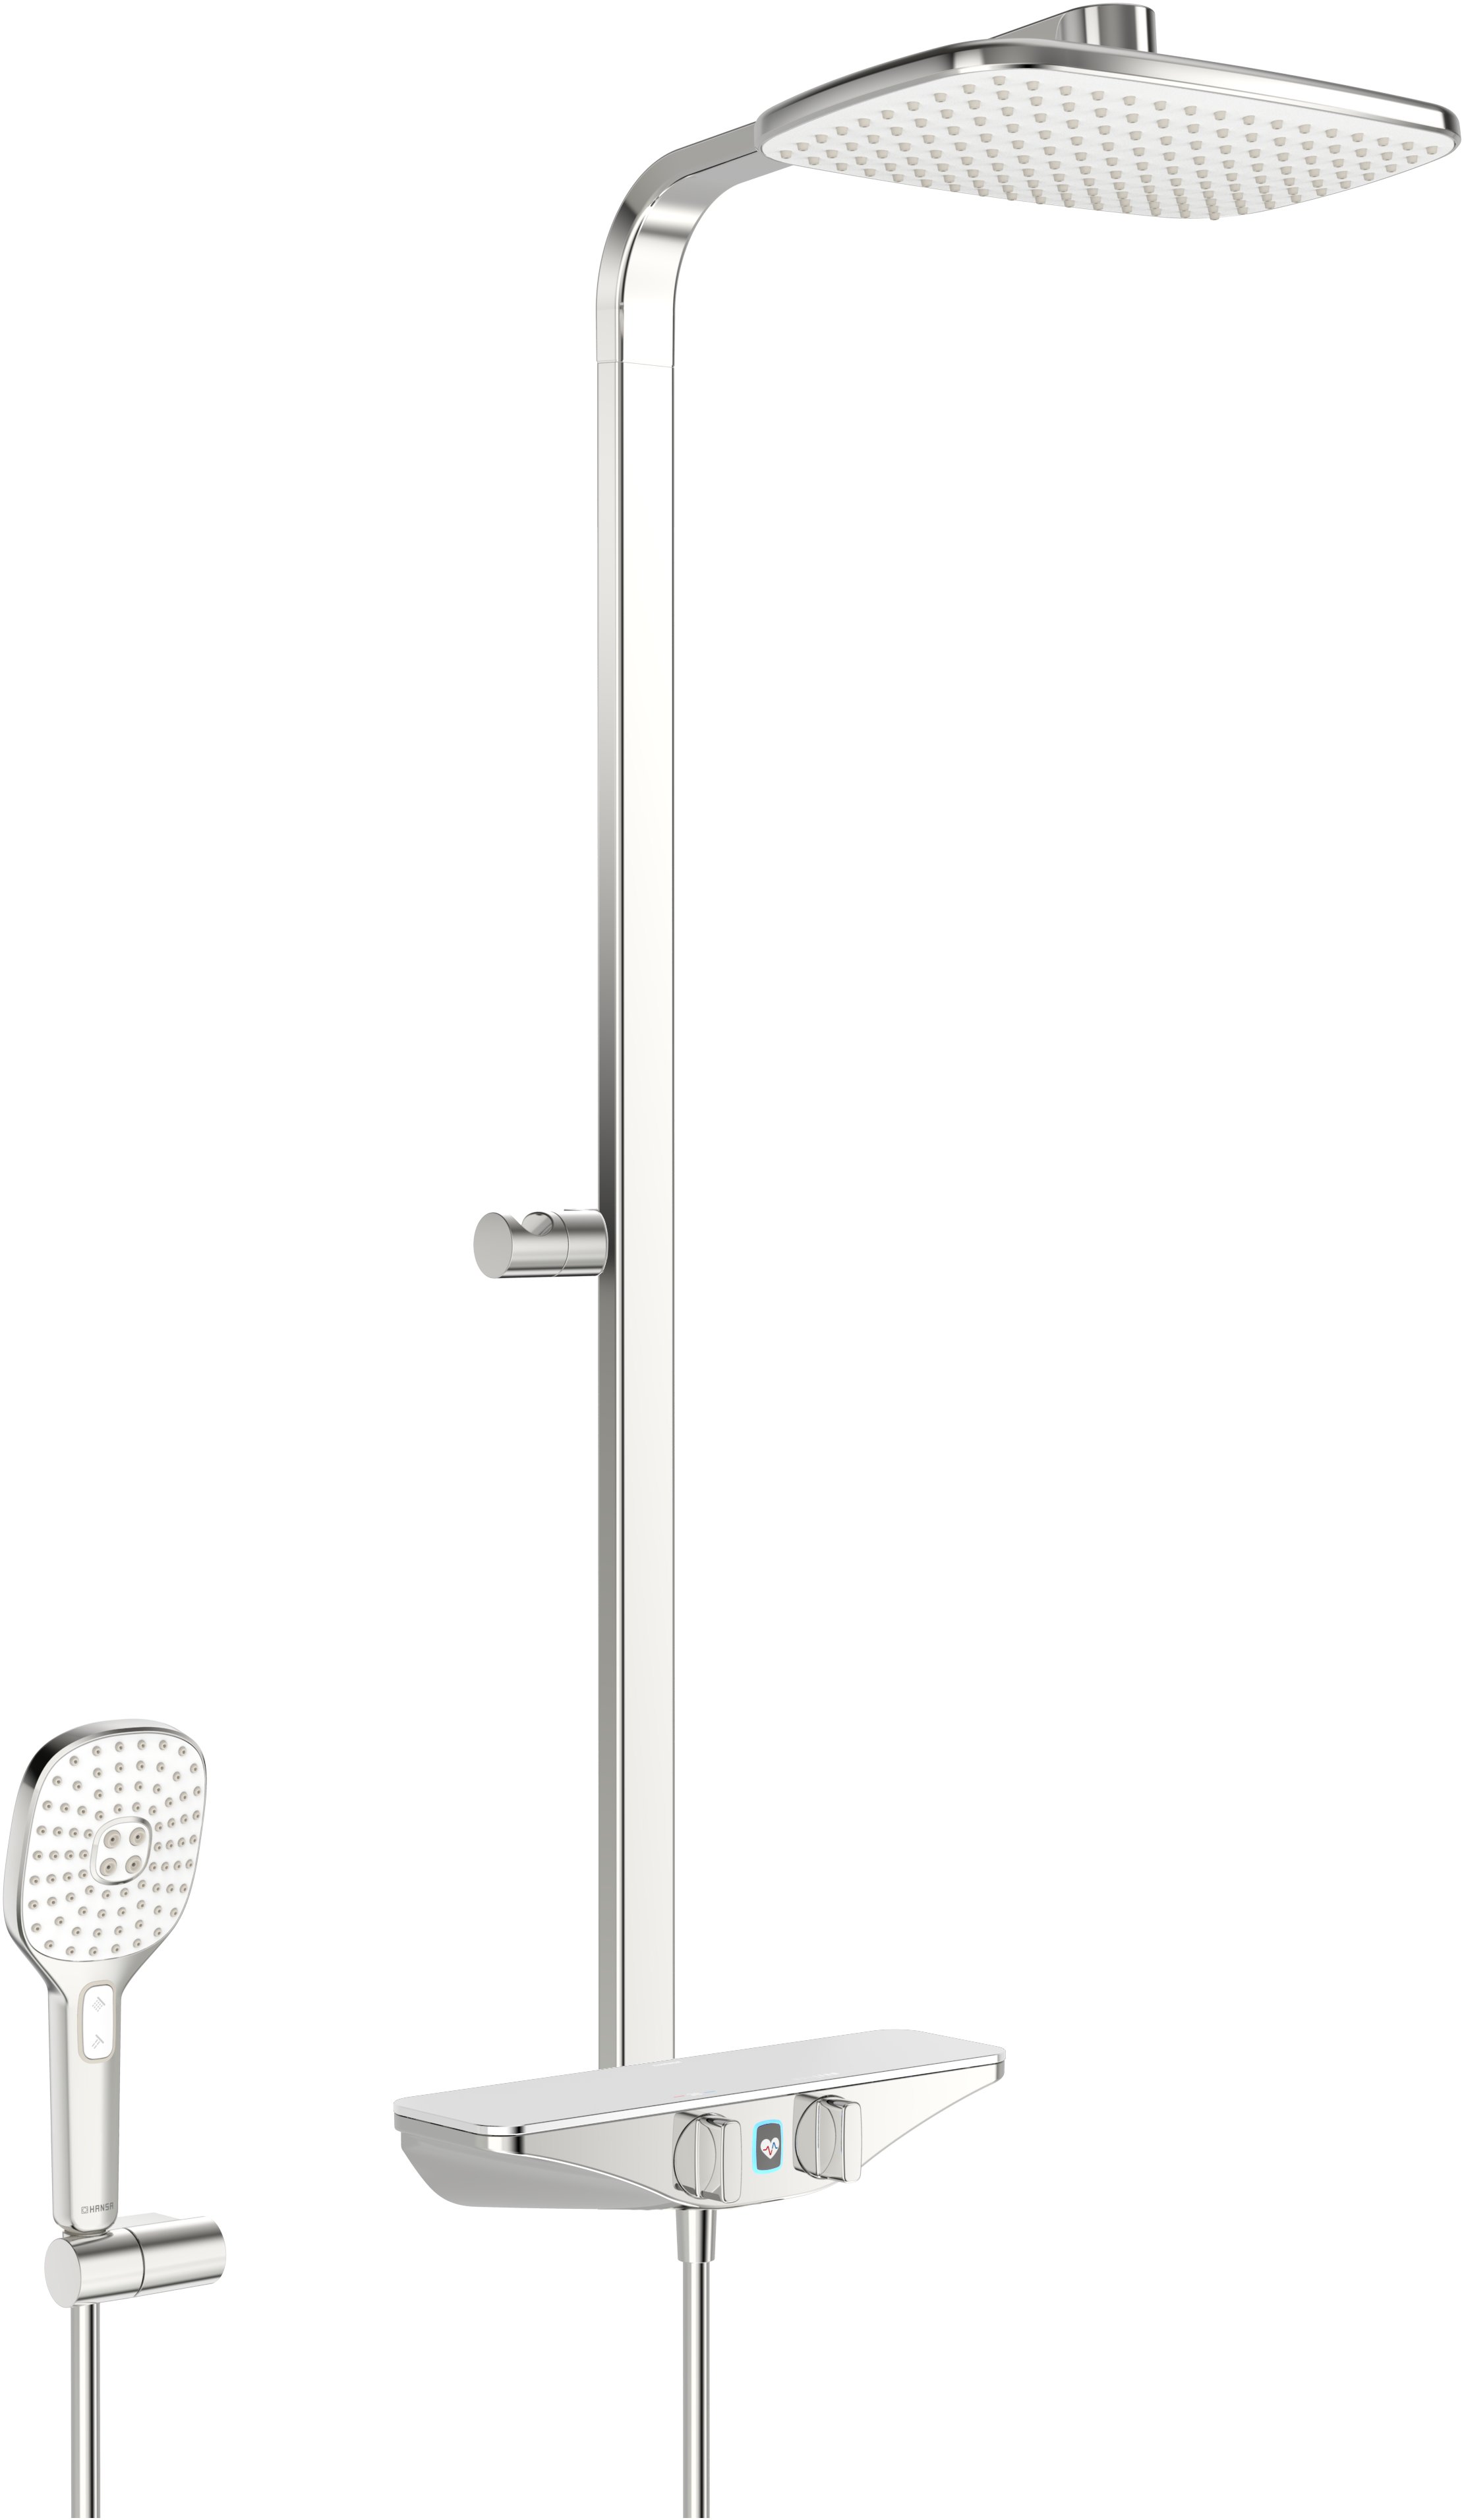 Hansaemotion Wellfit sprchový systém - nástěnná termostatická sprchová baterie, polička bílá 5865017282